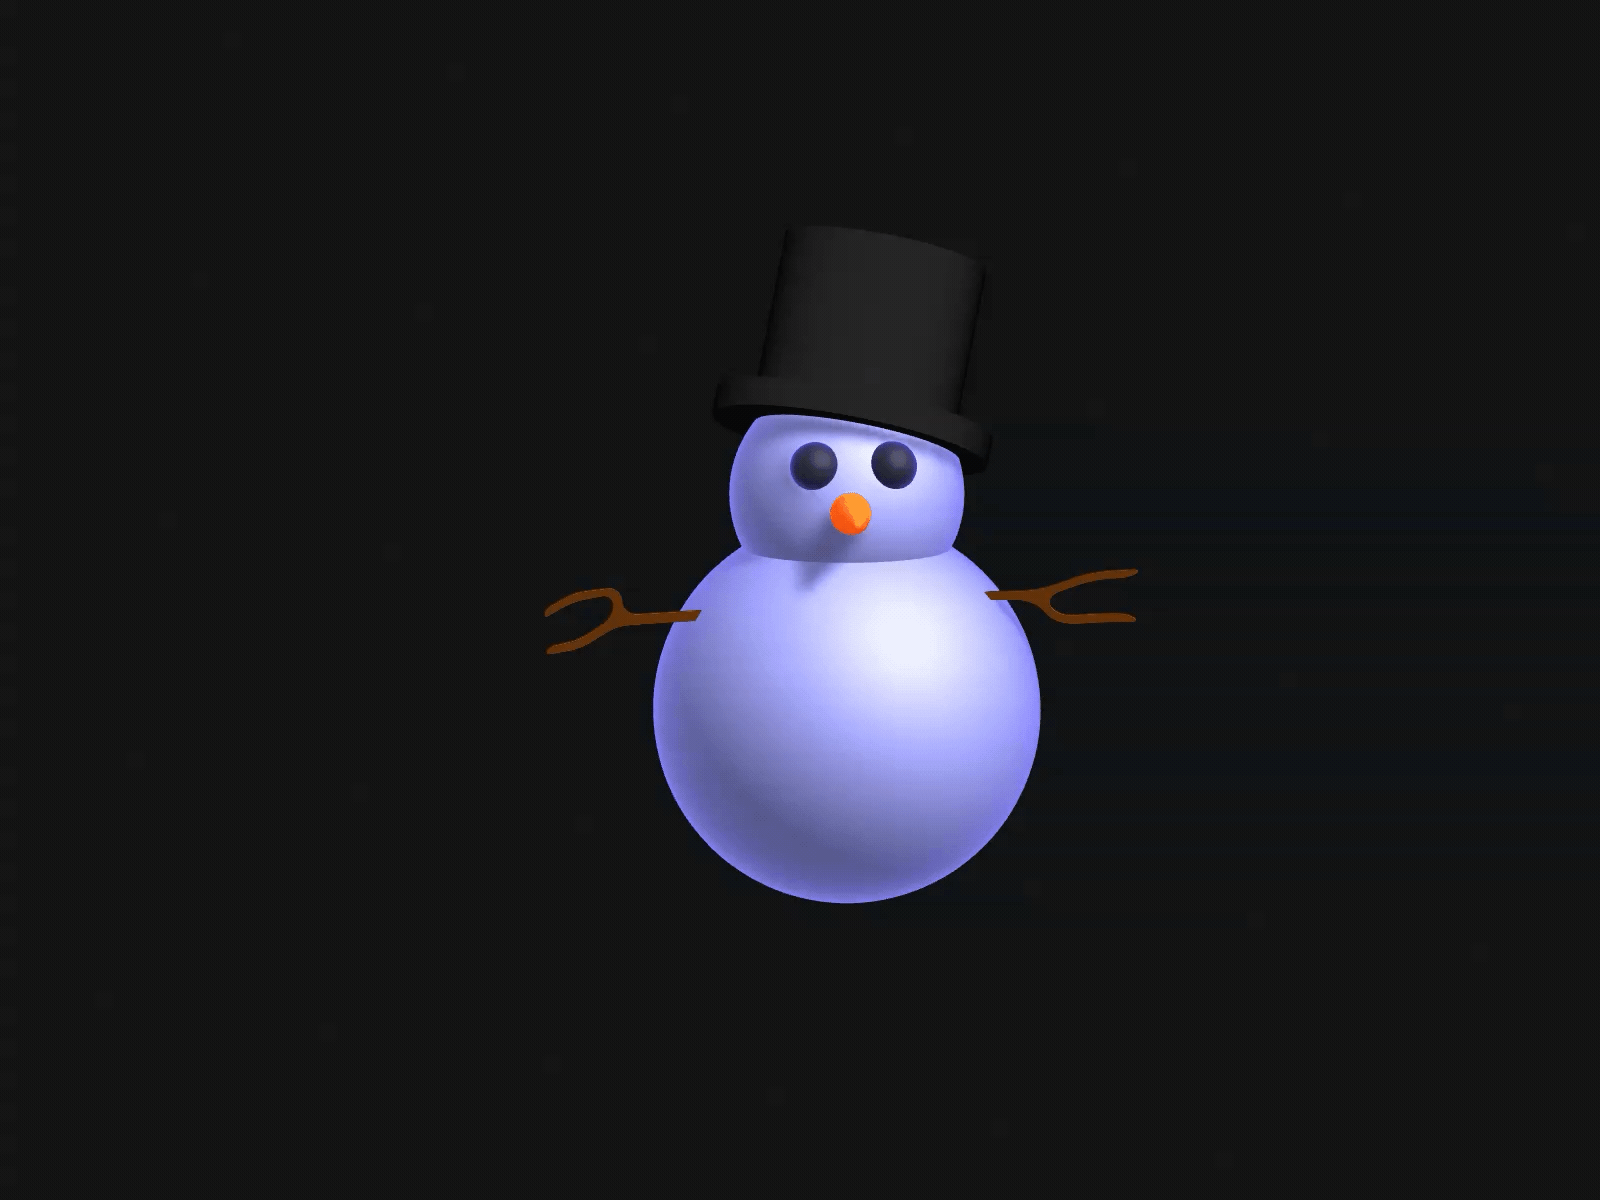 3D Snowman 3d 3danimation 3dforweb 3dui 3duianimation 3dux animation boltbite design loopable metaverse motion graphics spline spline3d ui uiux